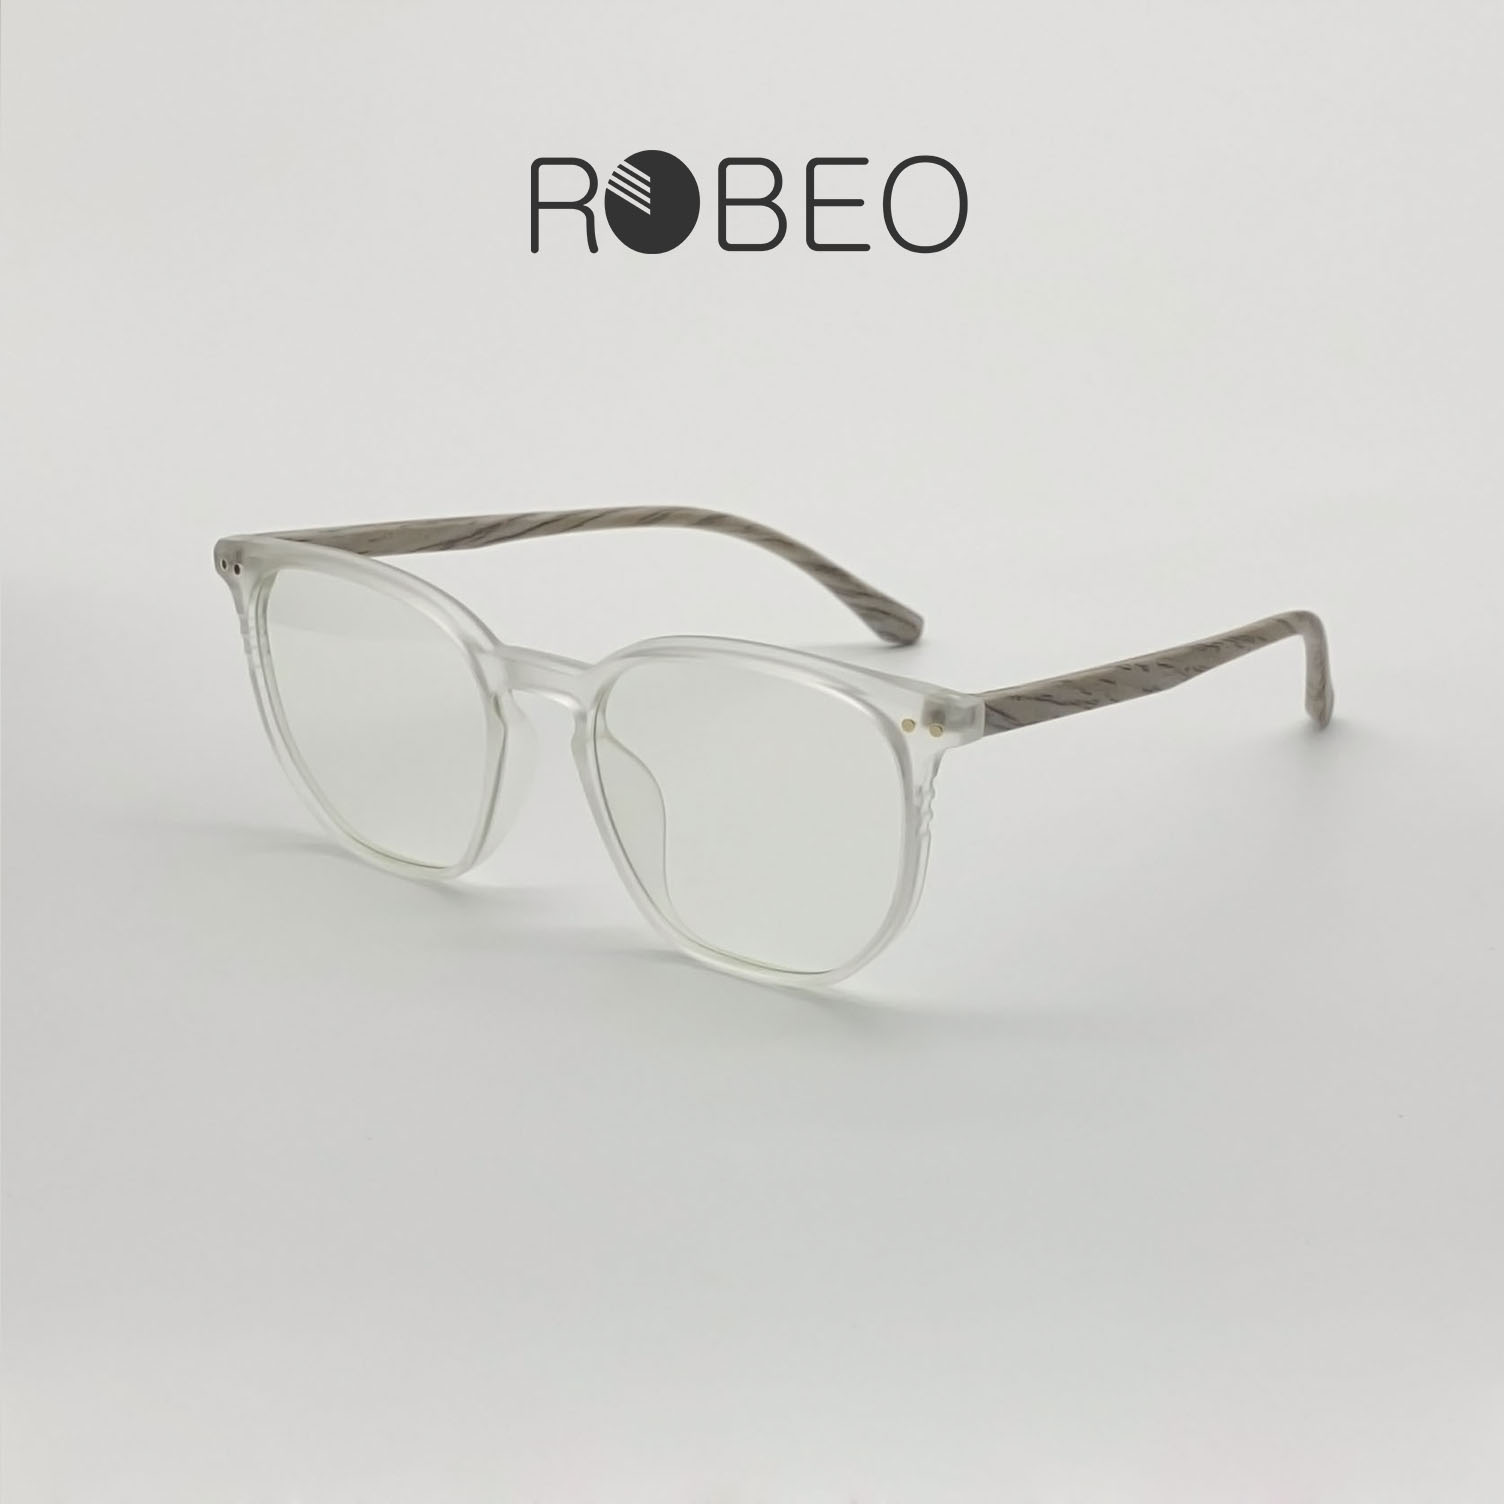 Gọng kính cận nam nữ ROBEO R0430, gọng nhám hoạ tiết vân gỗ mắt chống ánh sáng xanh - Fullbox